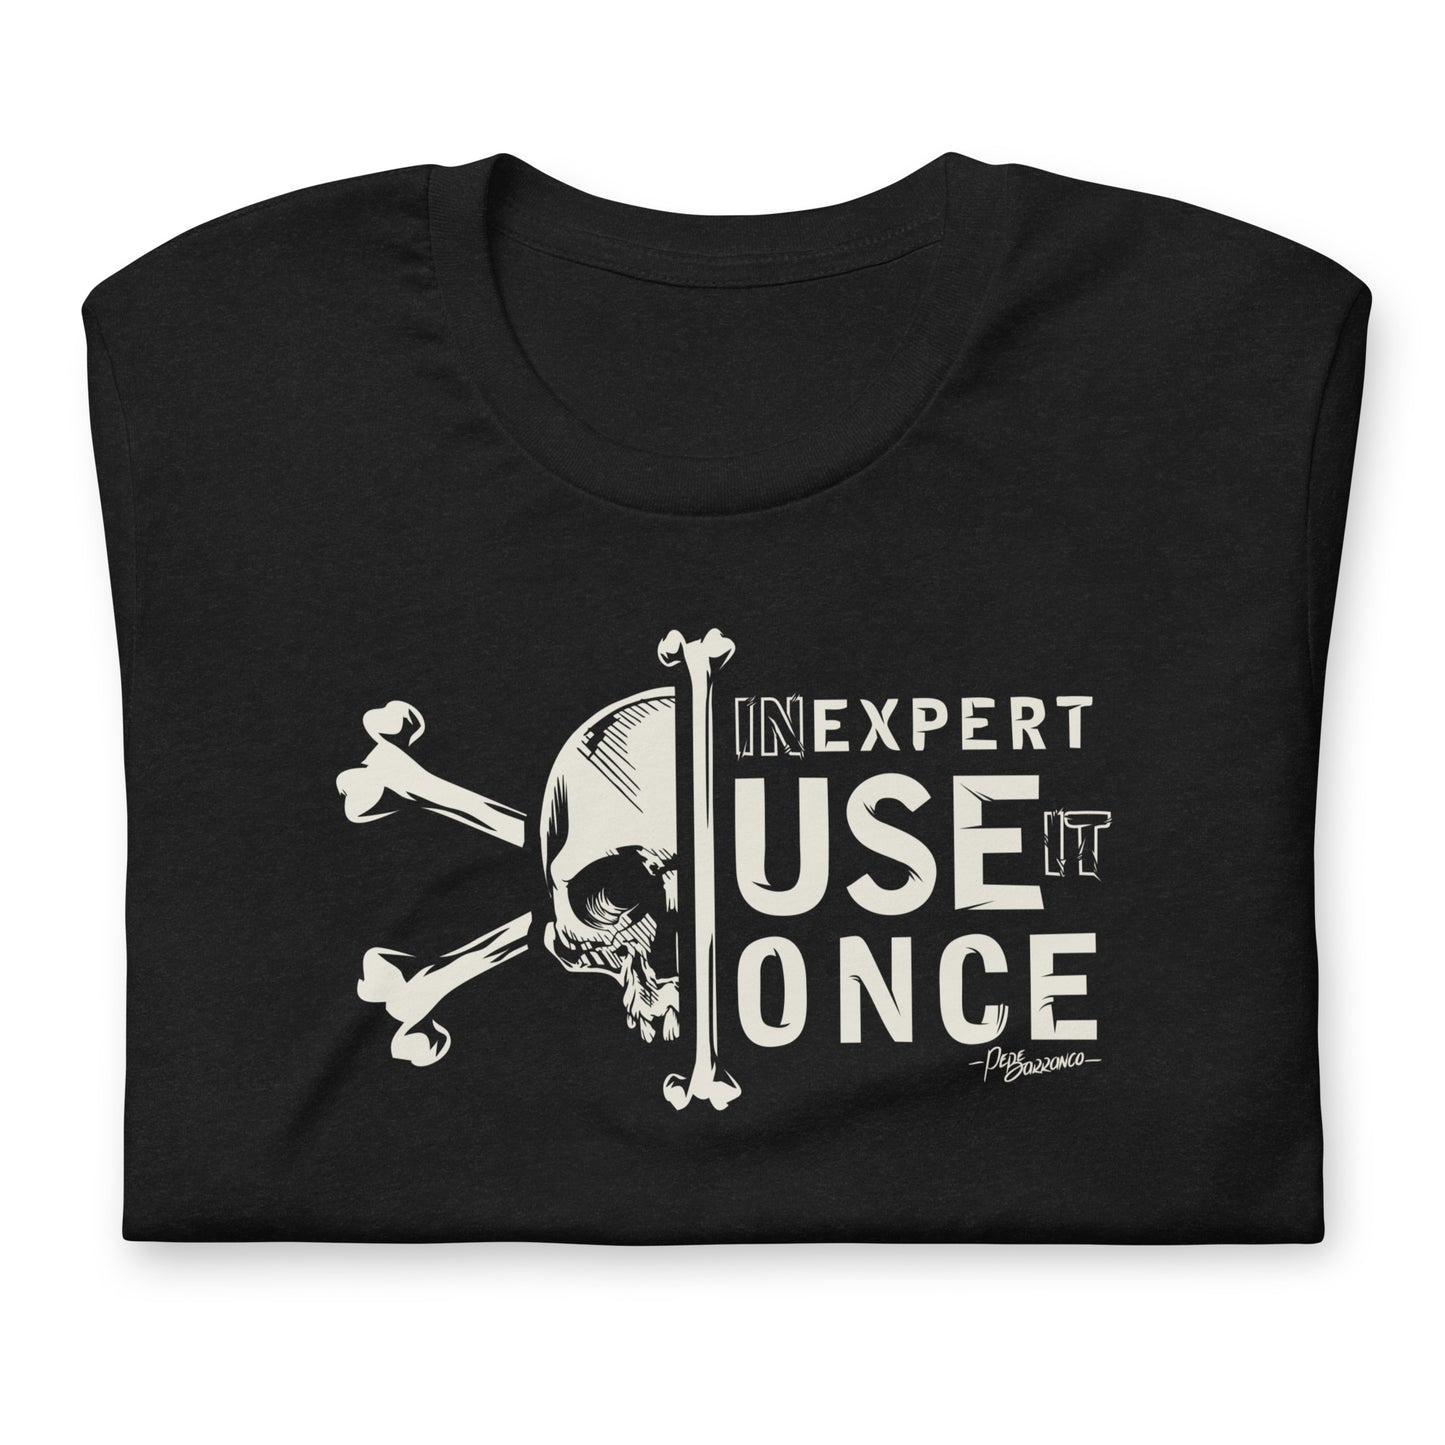 Camiseta "UN EXPERT"